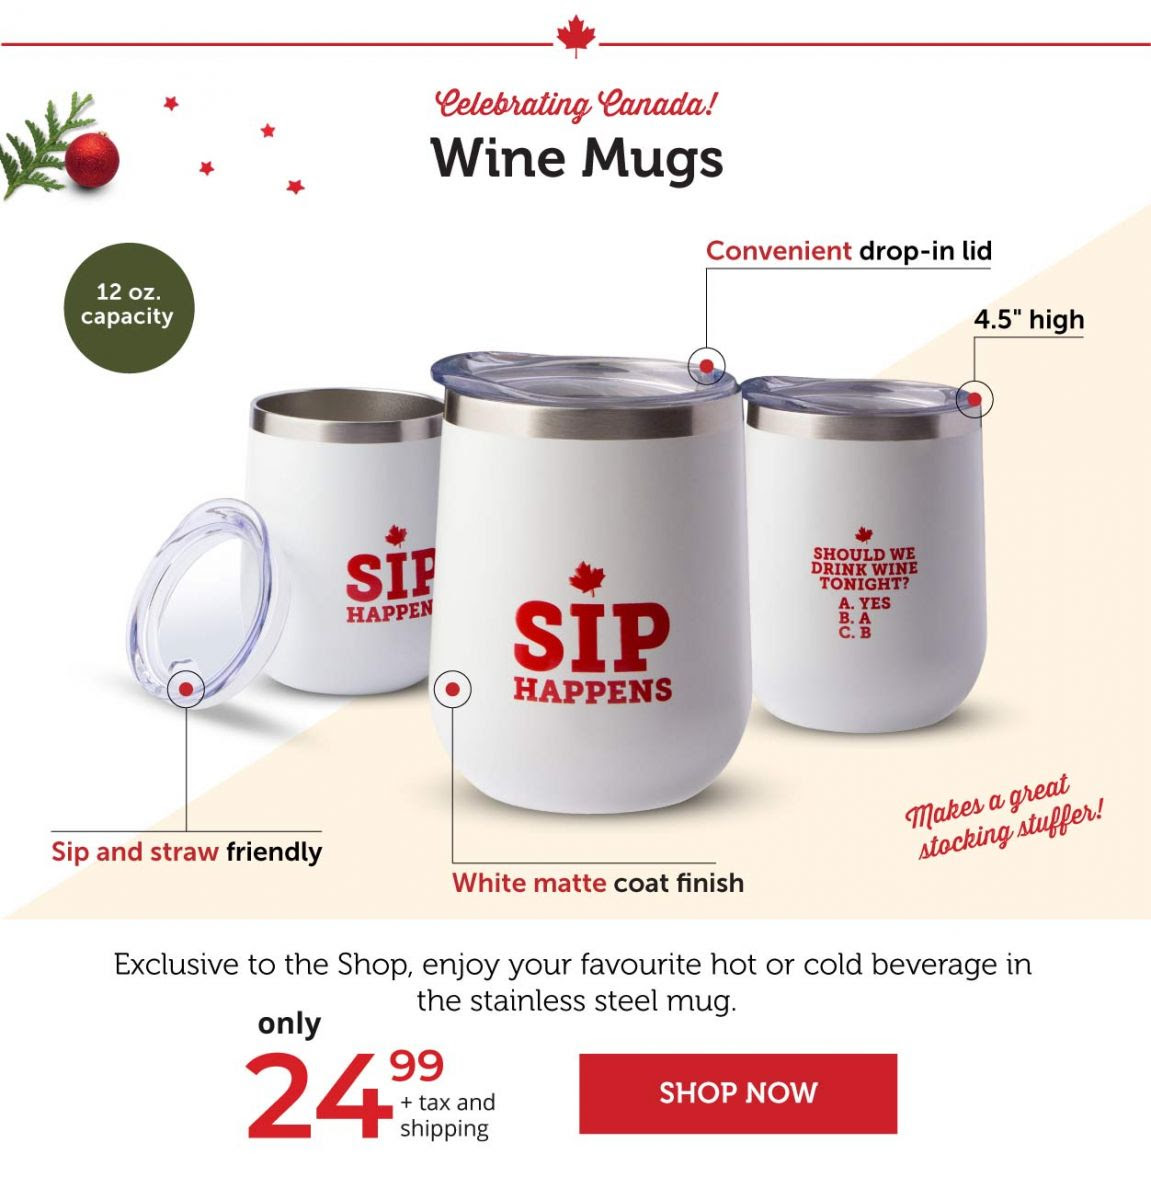 Celebrating Canada Wine Mugs